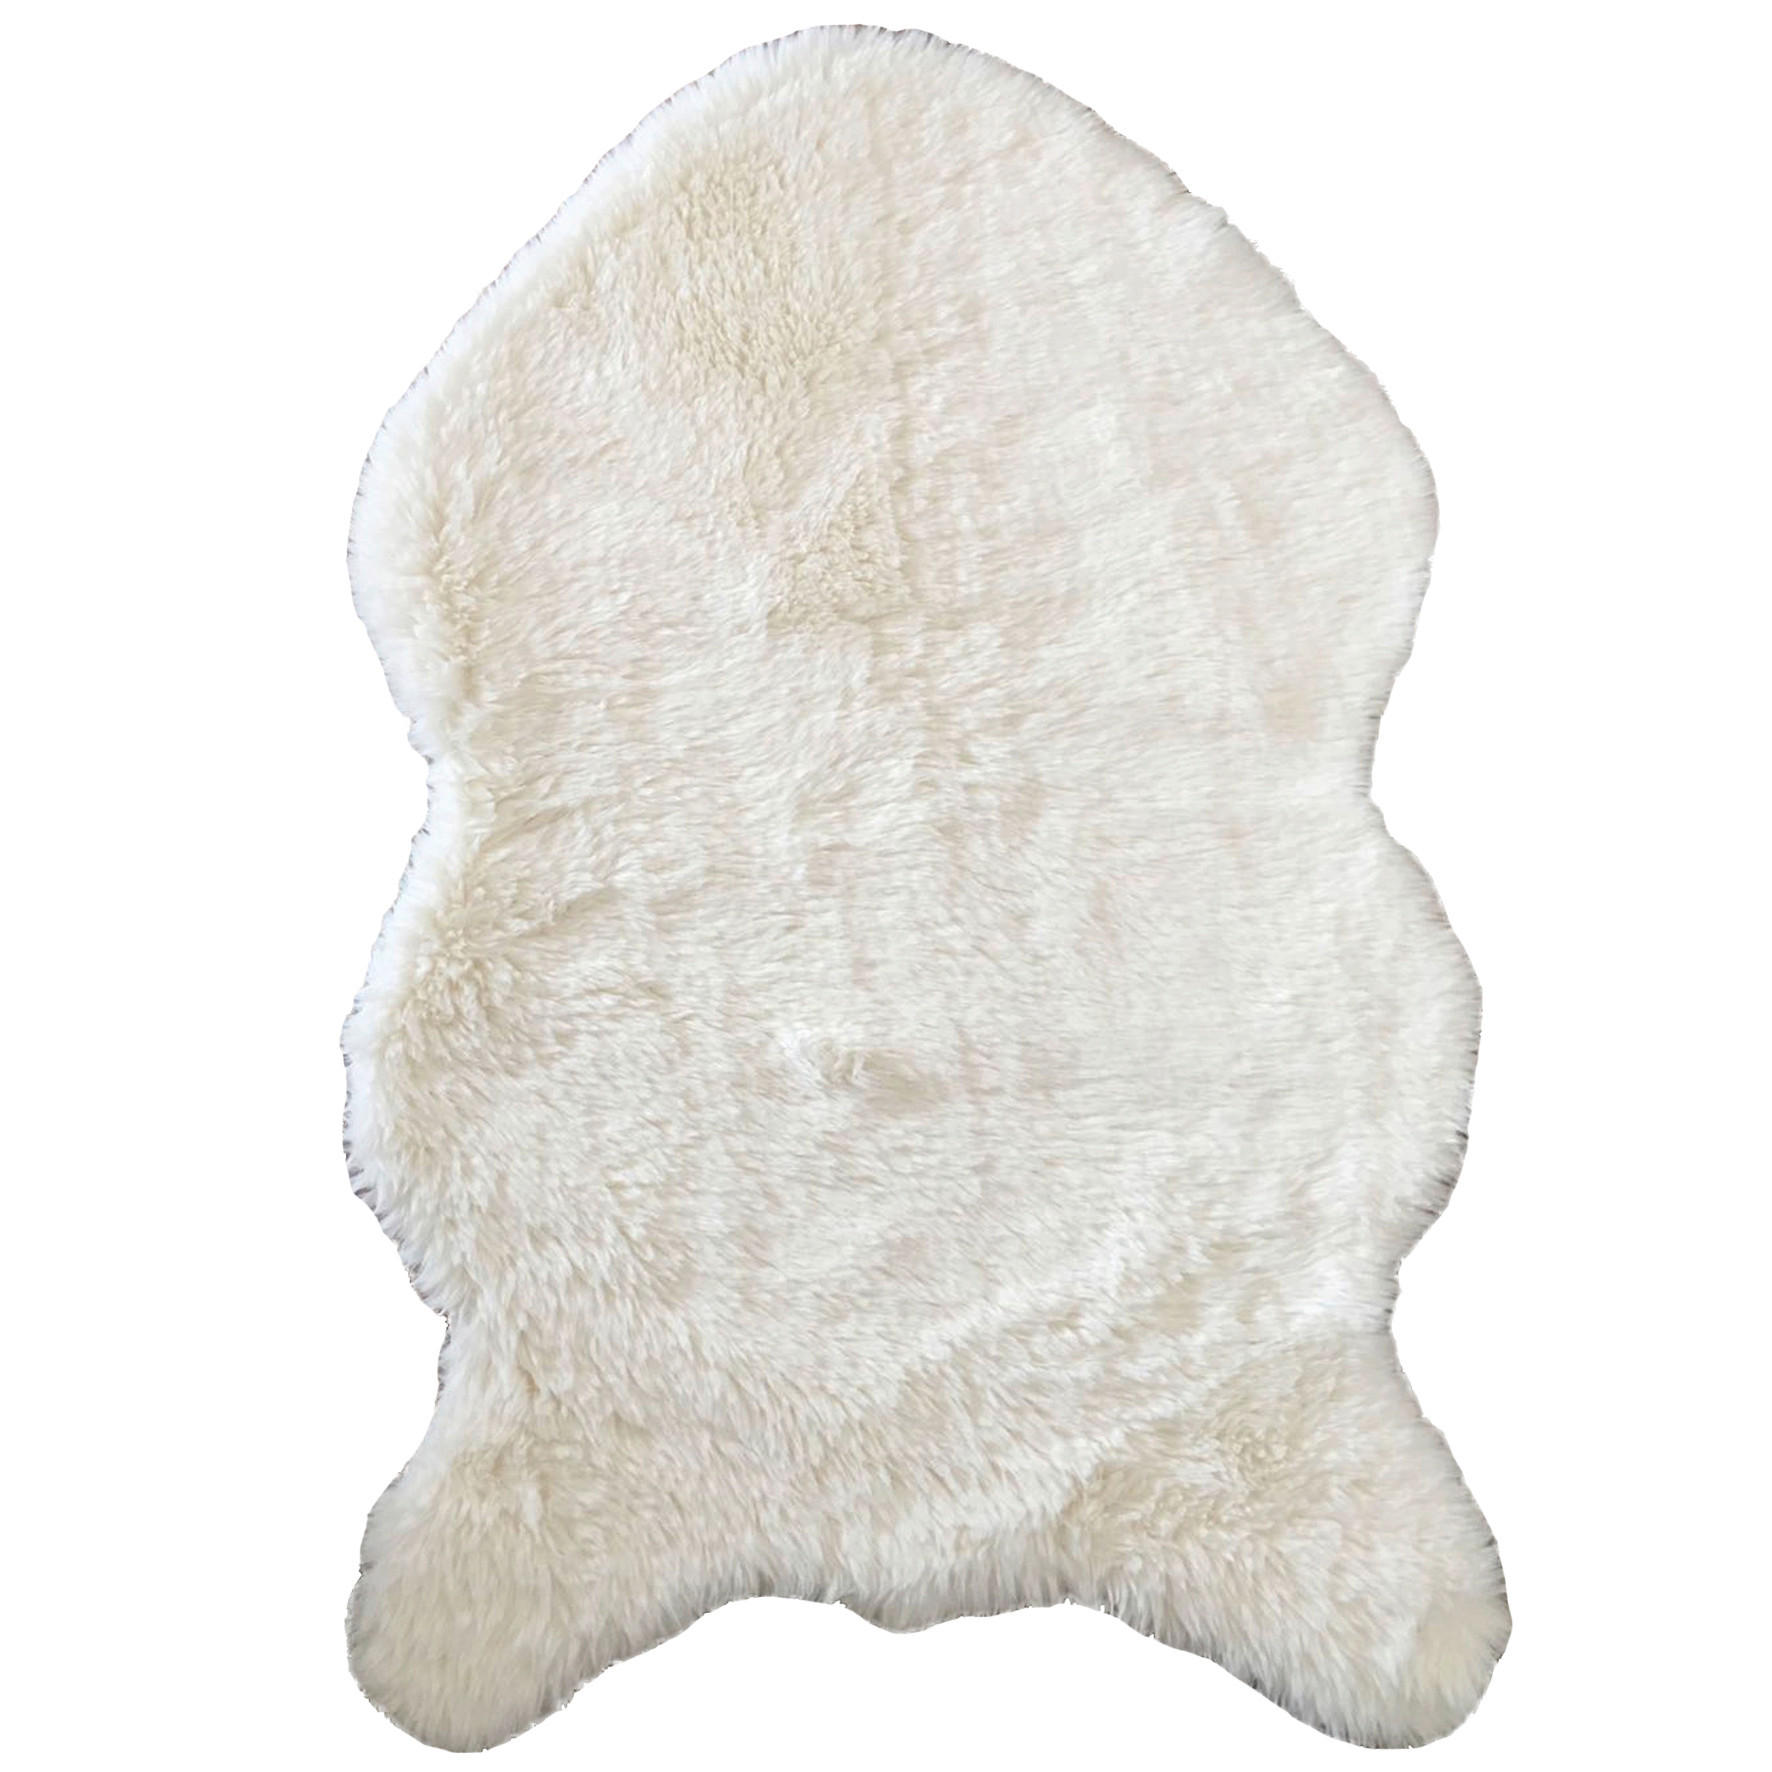 KUNSTFELL  60/90 cm  Weiß   - Weiß, Basics, Textil/Fell (60/90cm) - Boxxx